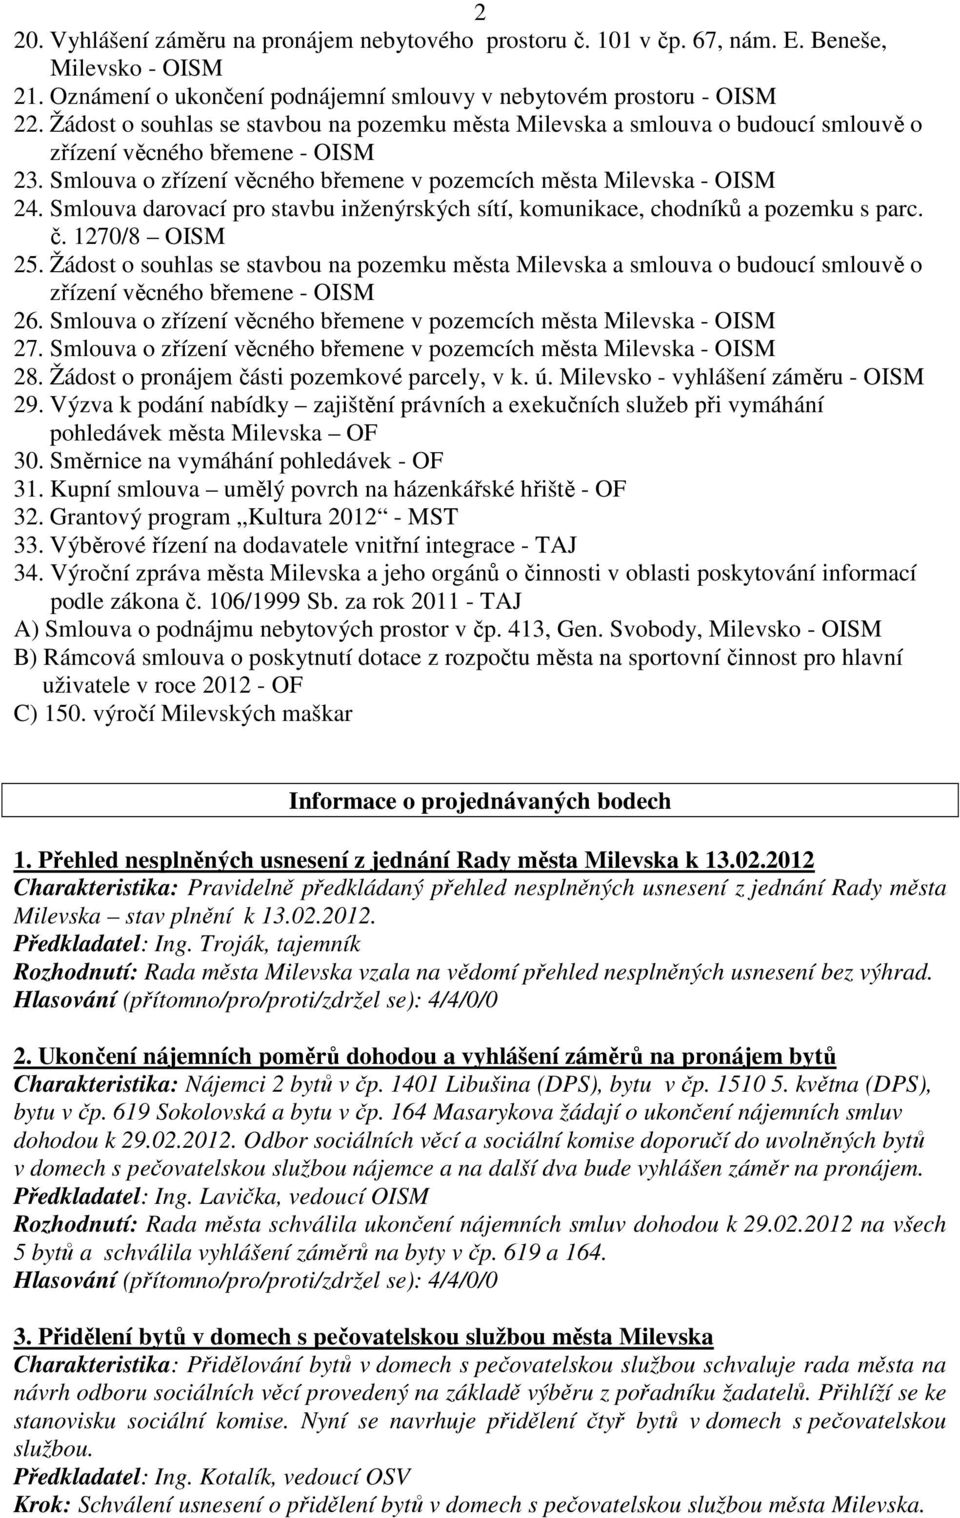 Smlouva darovací pro stavbu inženýrských sítí, komunikace, chodníků a pozemku s parc. č. 1270/8 OISM 25.